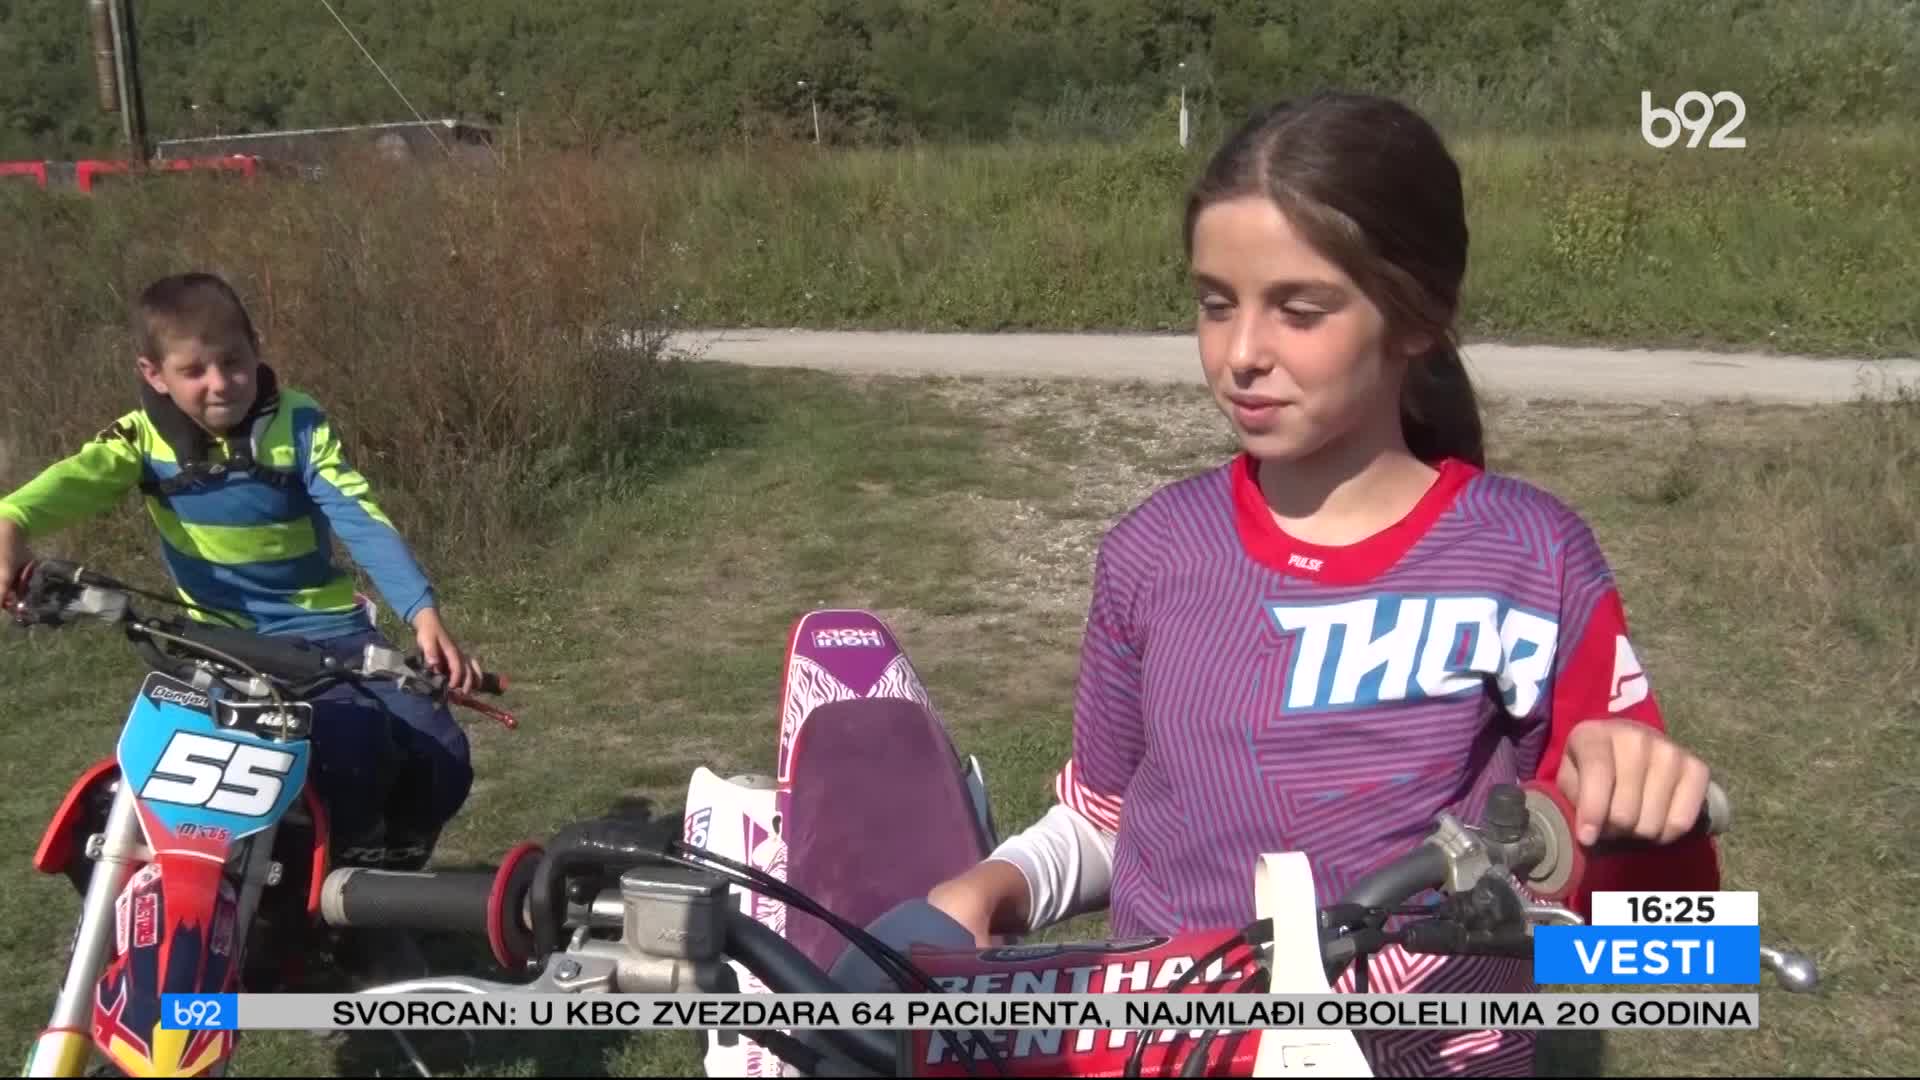 Deca motoristi iz okoline Užica oduševljavaju sve na moto-kros trkama